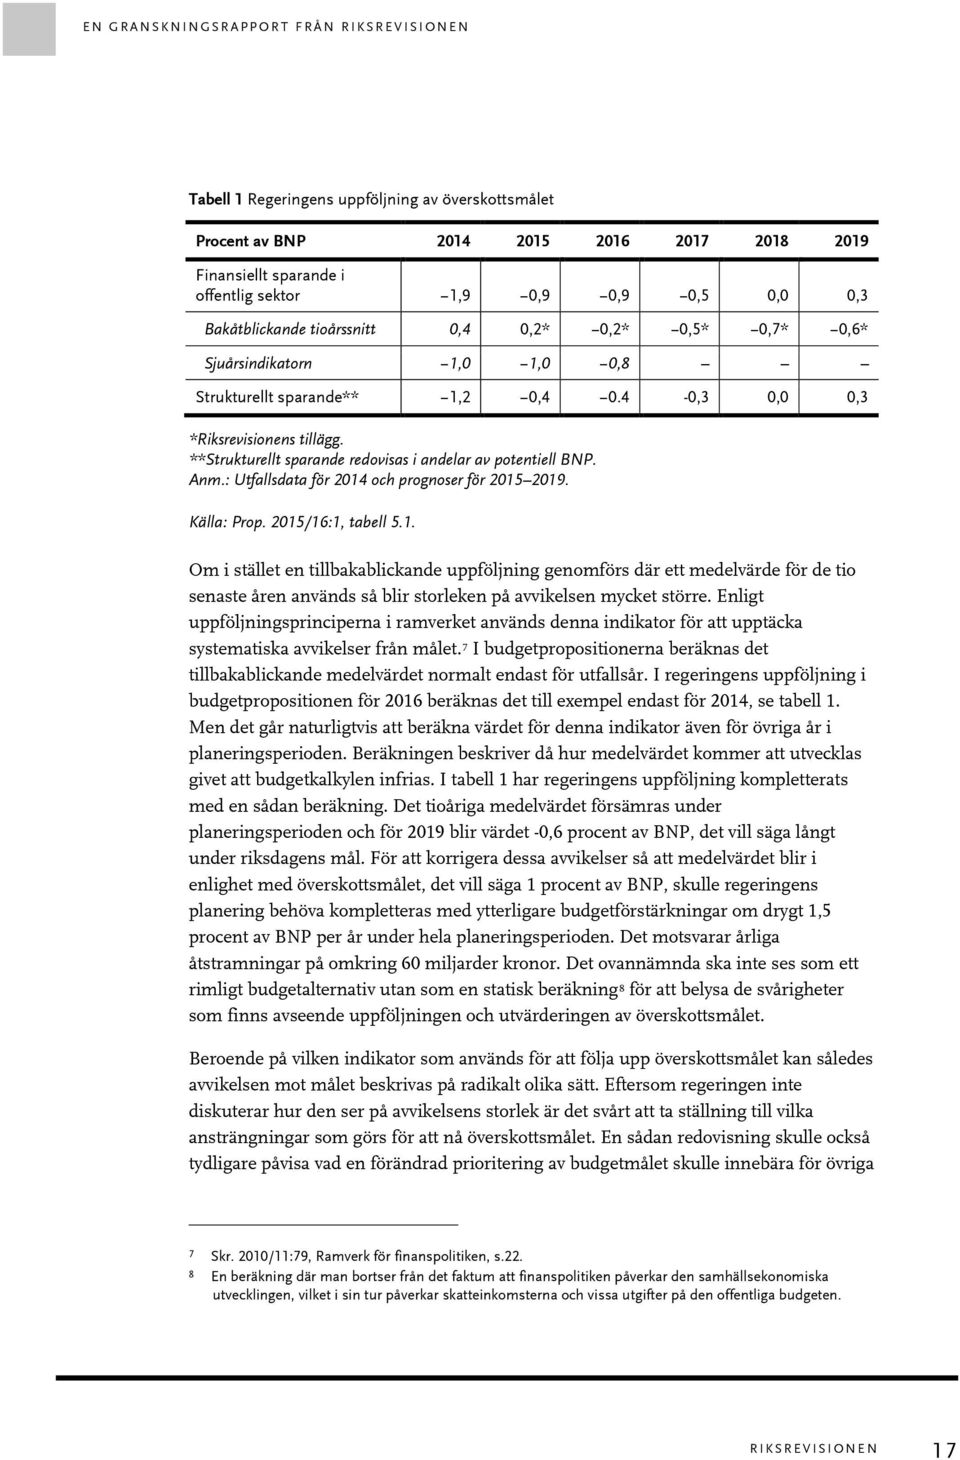 **Strukturellt sparande redovisas i andelar av potentiell BNP. Anm.: Utfallsdata för 2014